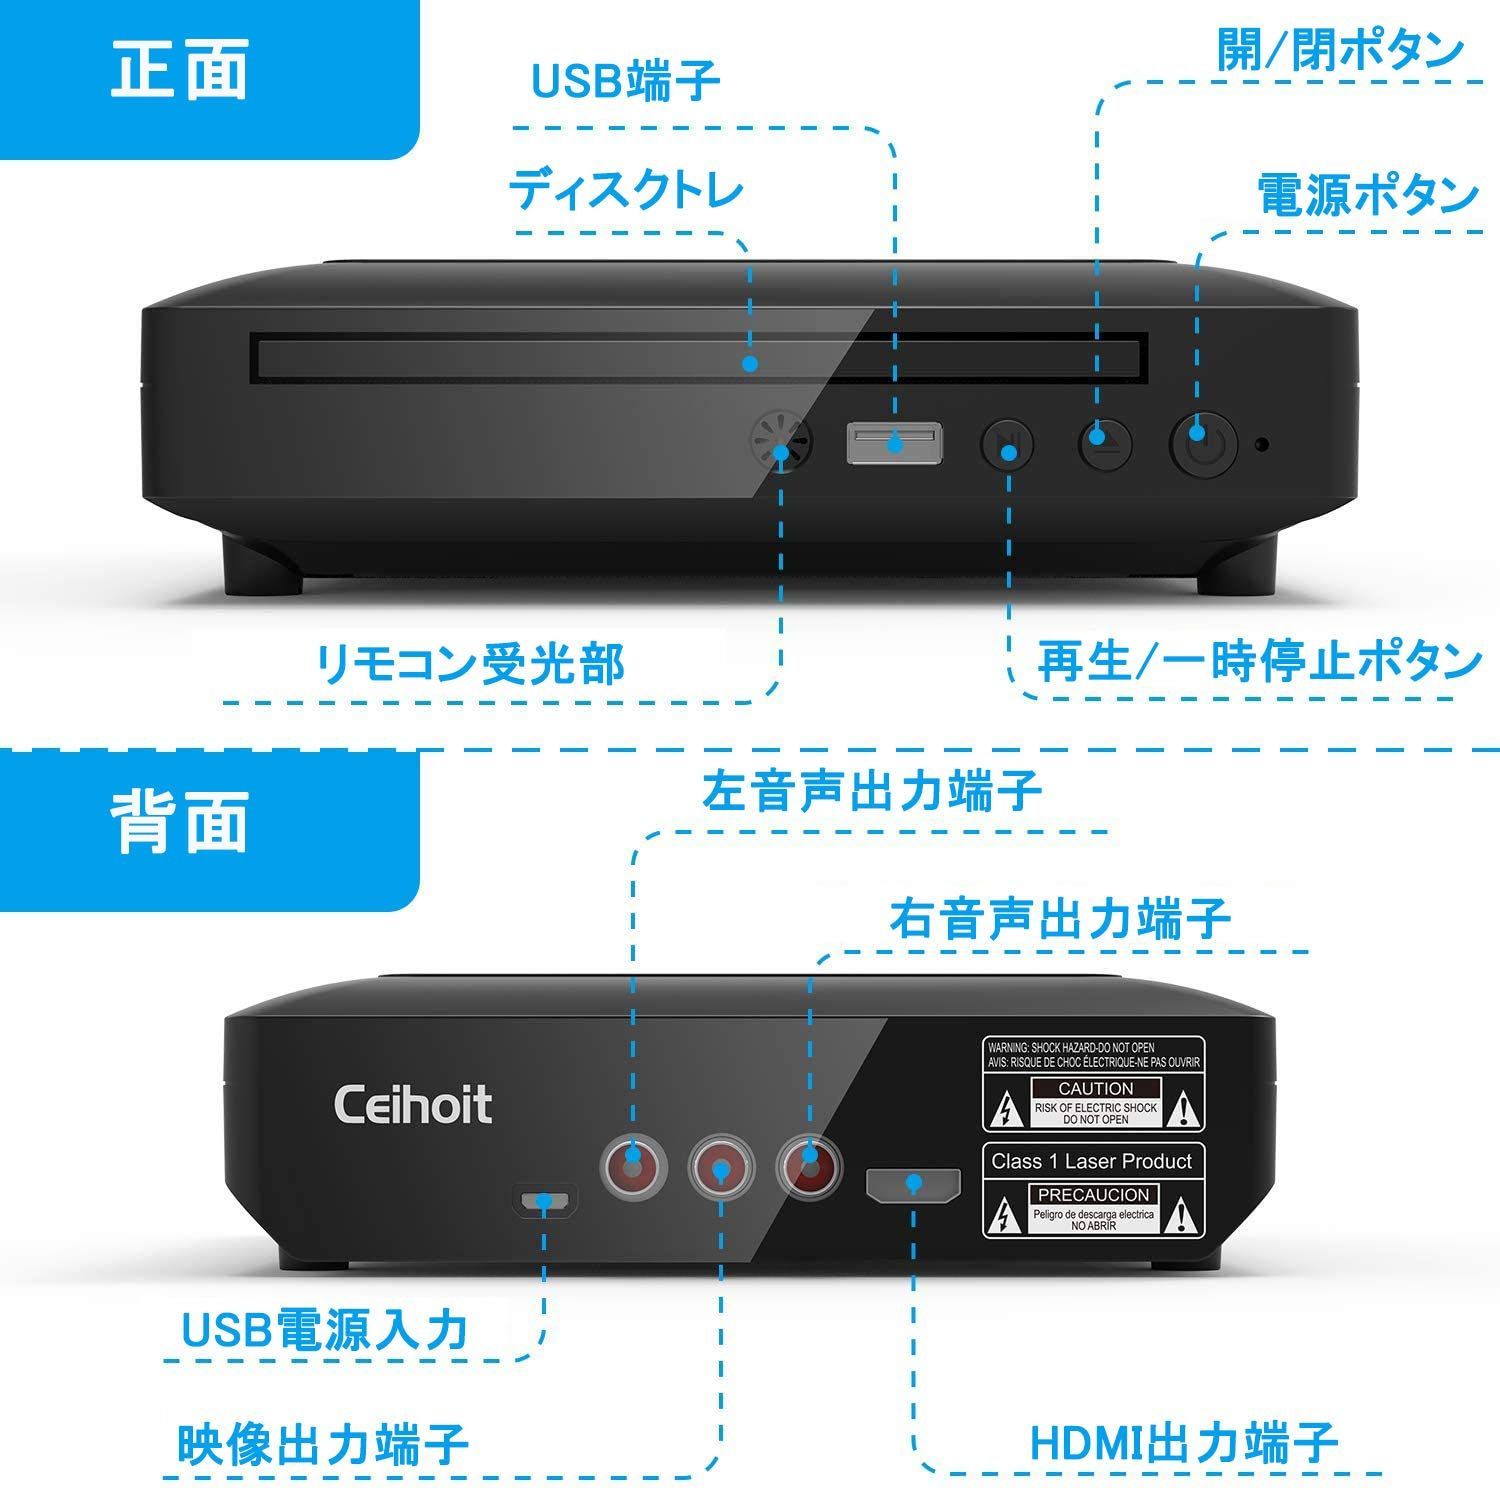 ミニDVDプレーヤー 1080Pサポート DVD/CD再生専用モデル HDMI端子搭載 CPRM対応、録画した番組や地上デジタル放送を再生する、AV/HDMIケーブルが付属し、テレビ/プロジェクター接続可能、日本語説明書付き (小さい)